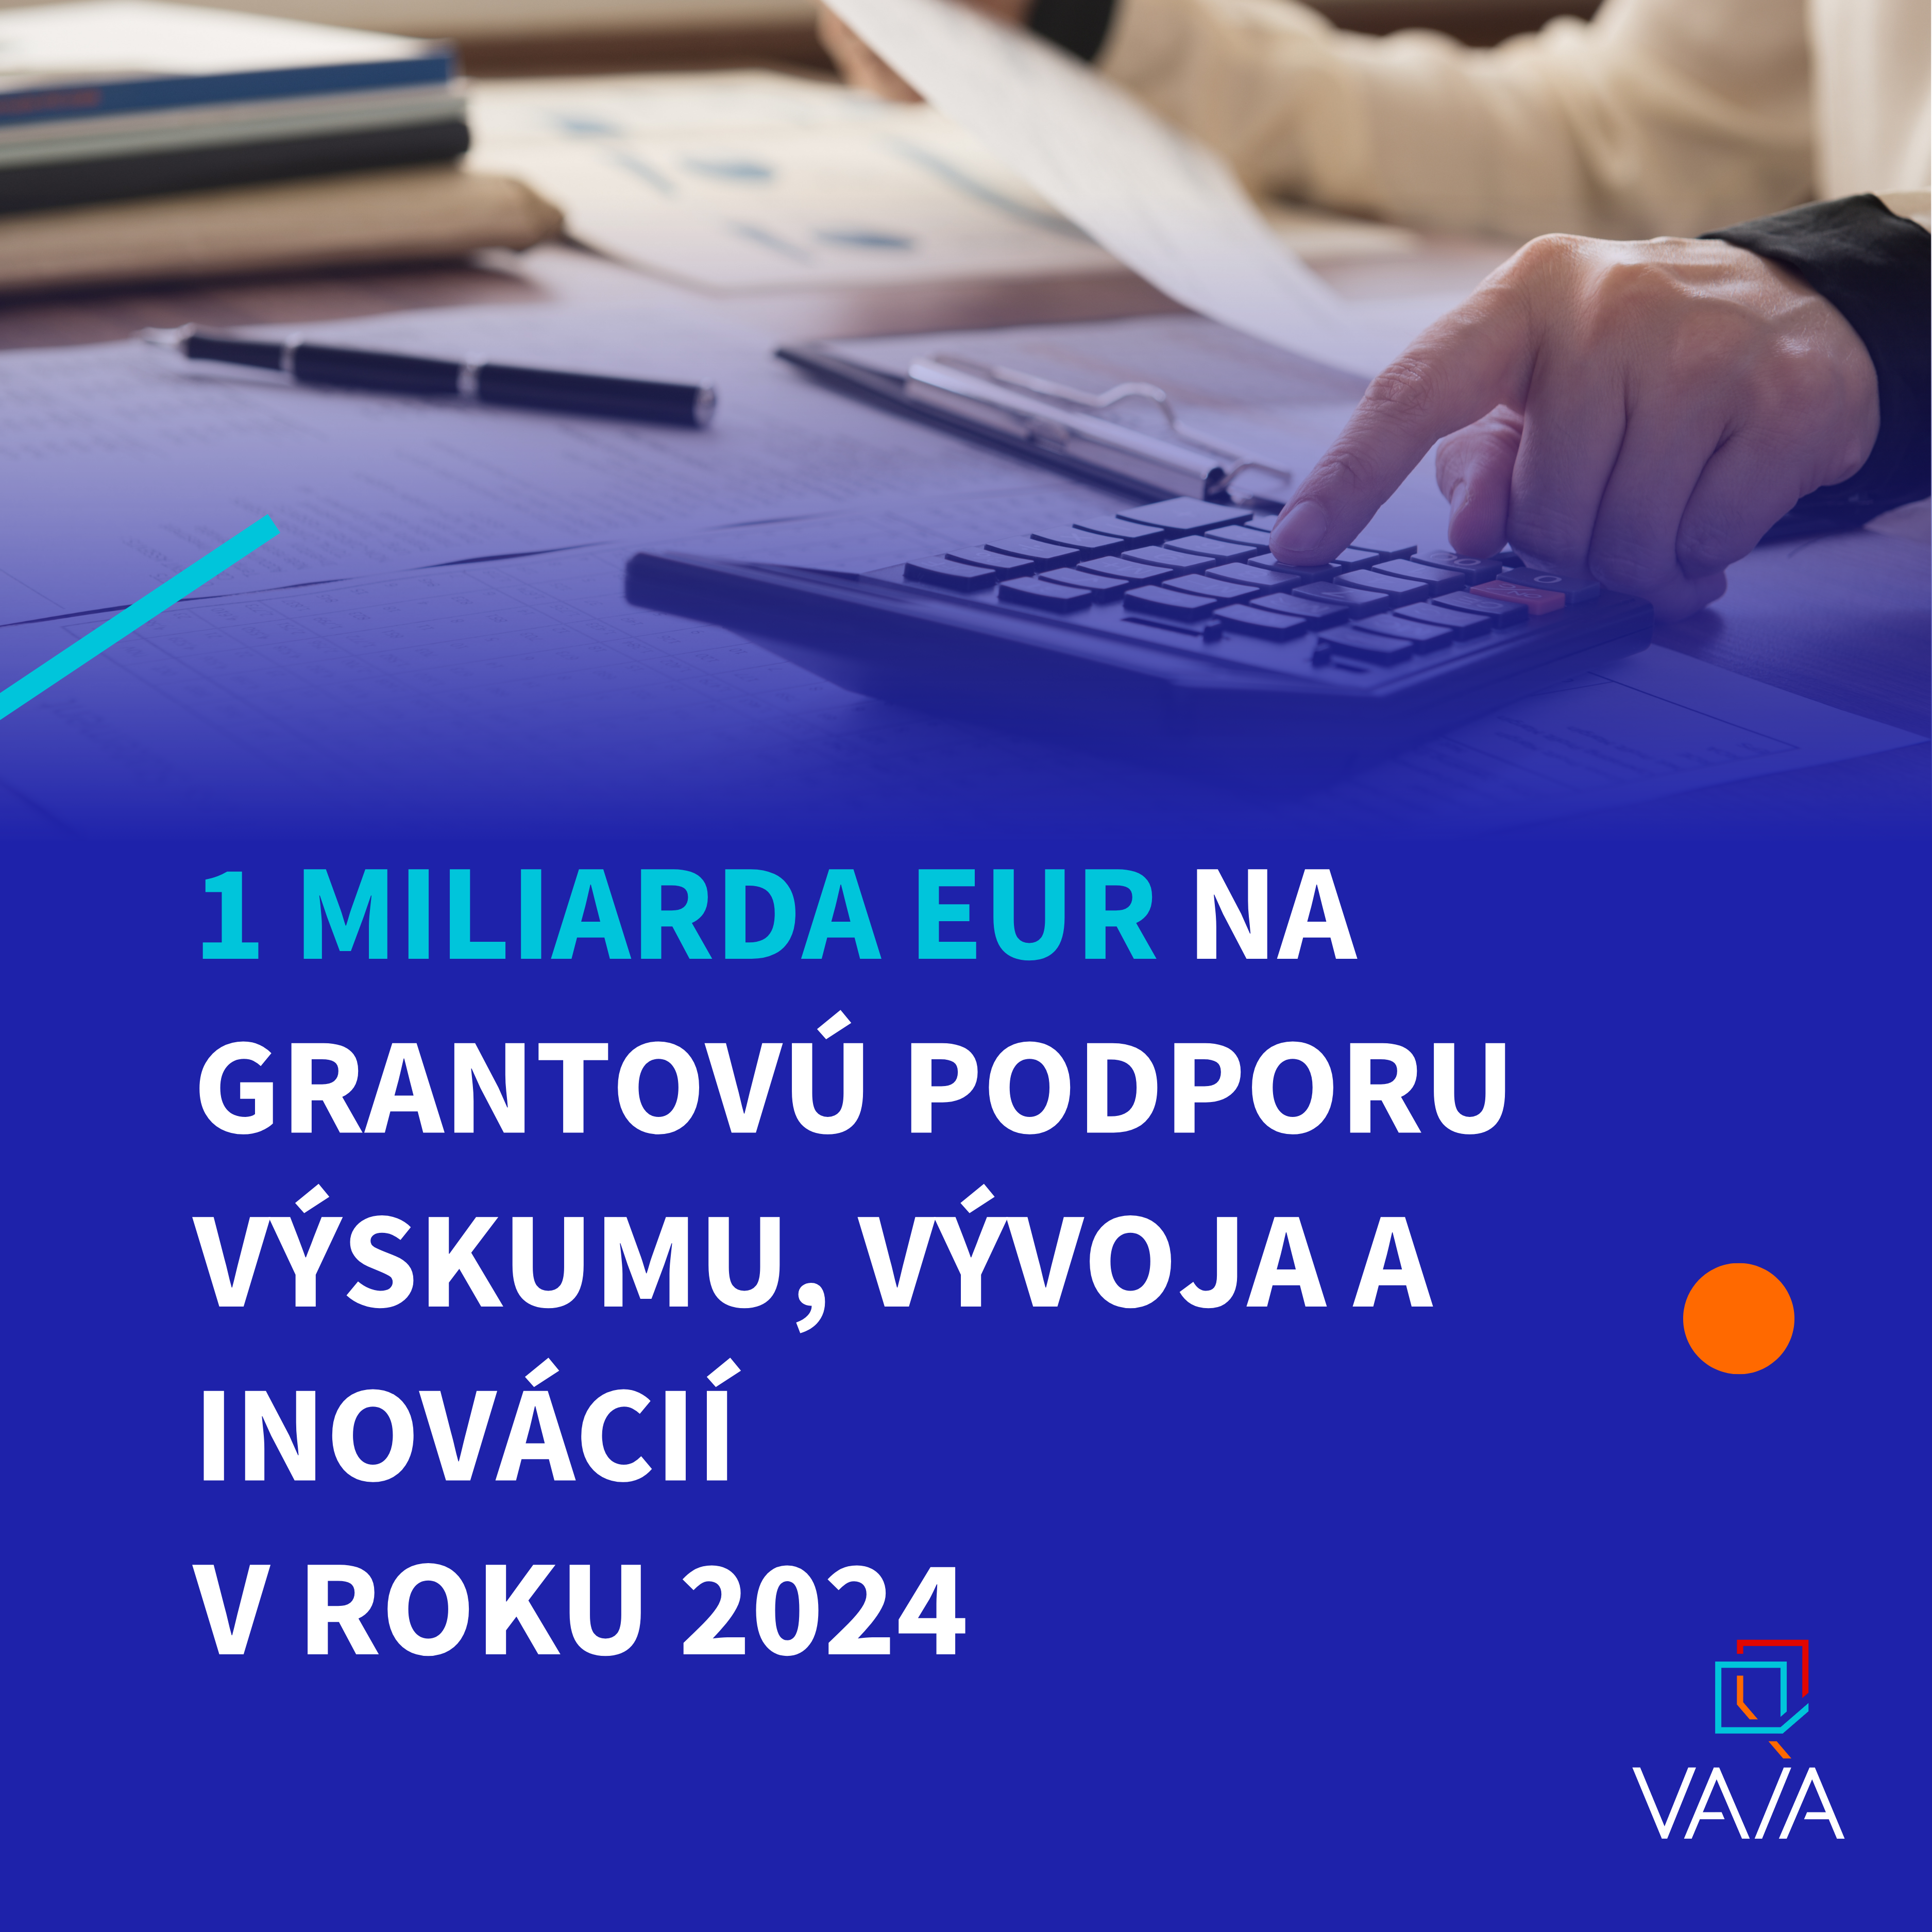 Prvý predbežný plán financovania podpory VVaI prináša granty s orientáciou na užívateľa